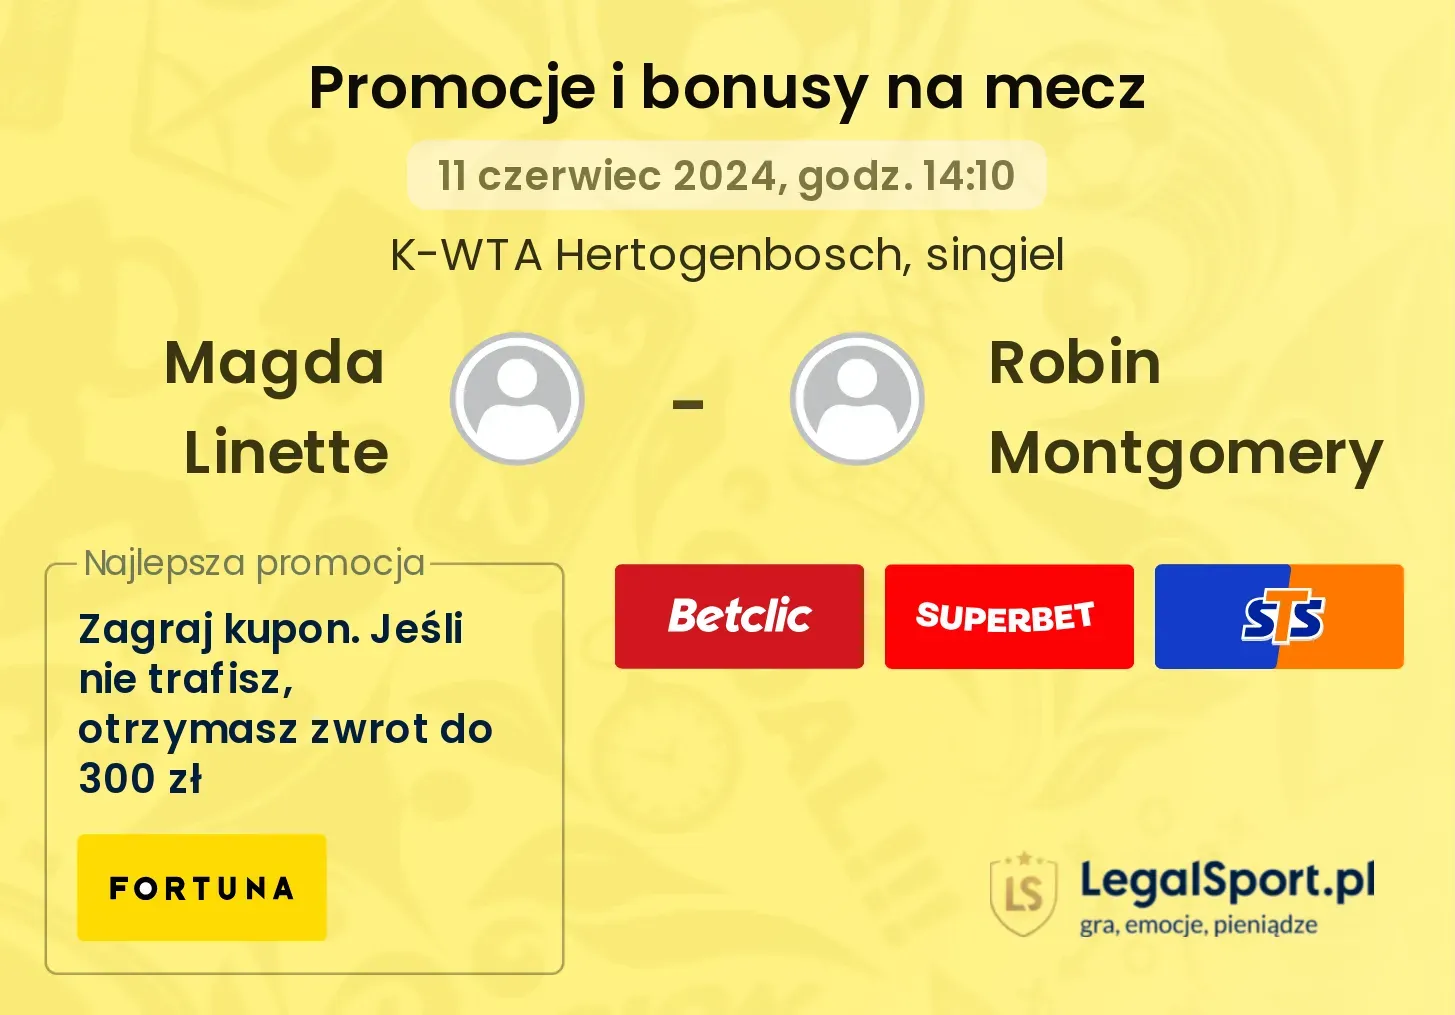 Magda Linette - Robin Montgomery promocje bonusy na mecz